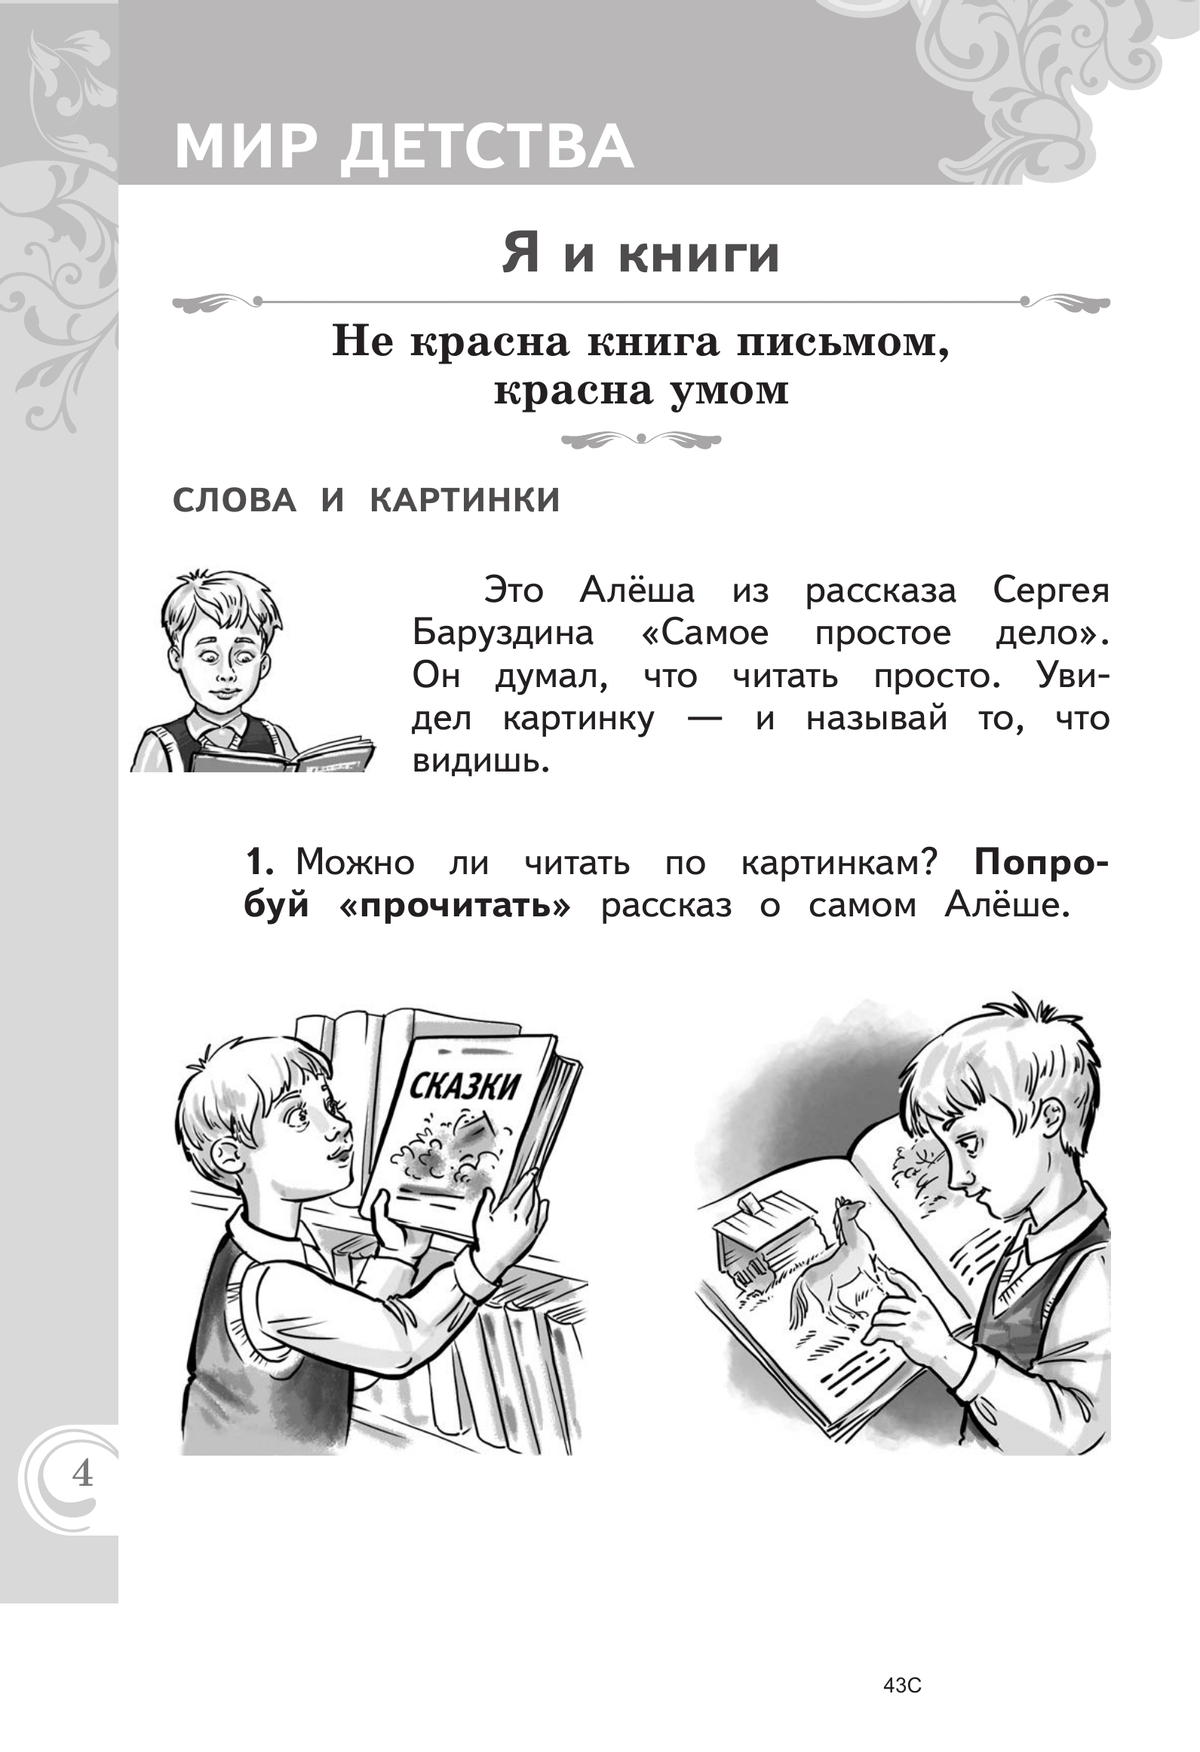 Литературное чтение на русском родном языке. 1 класс. Практикум 5